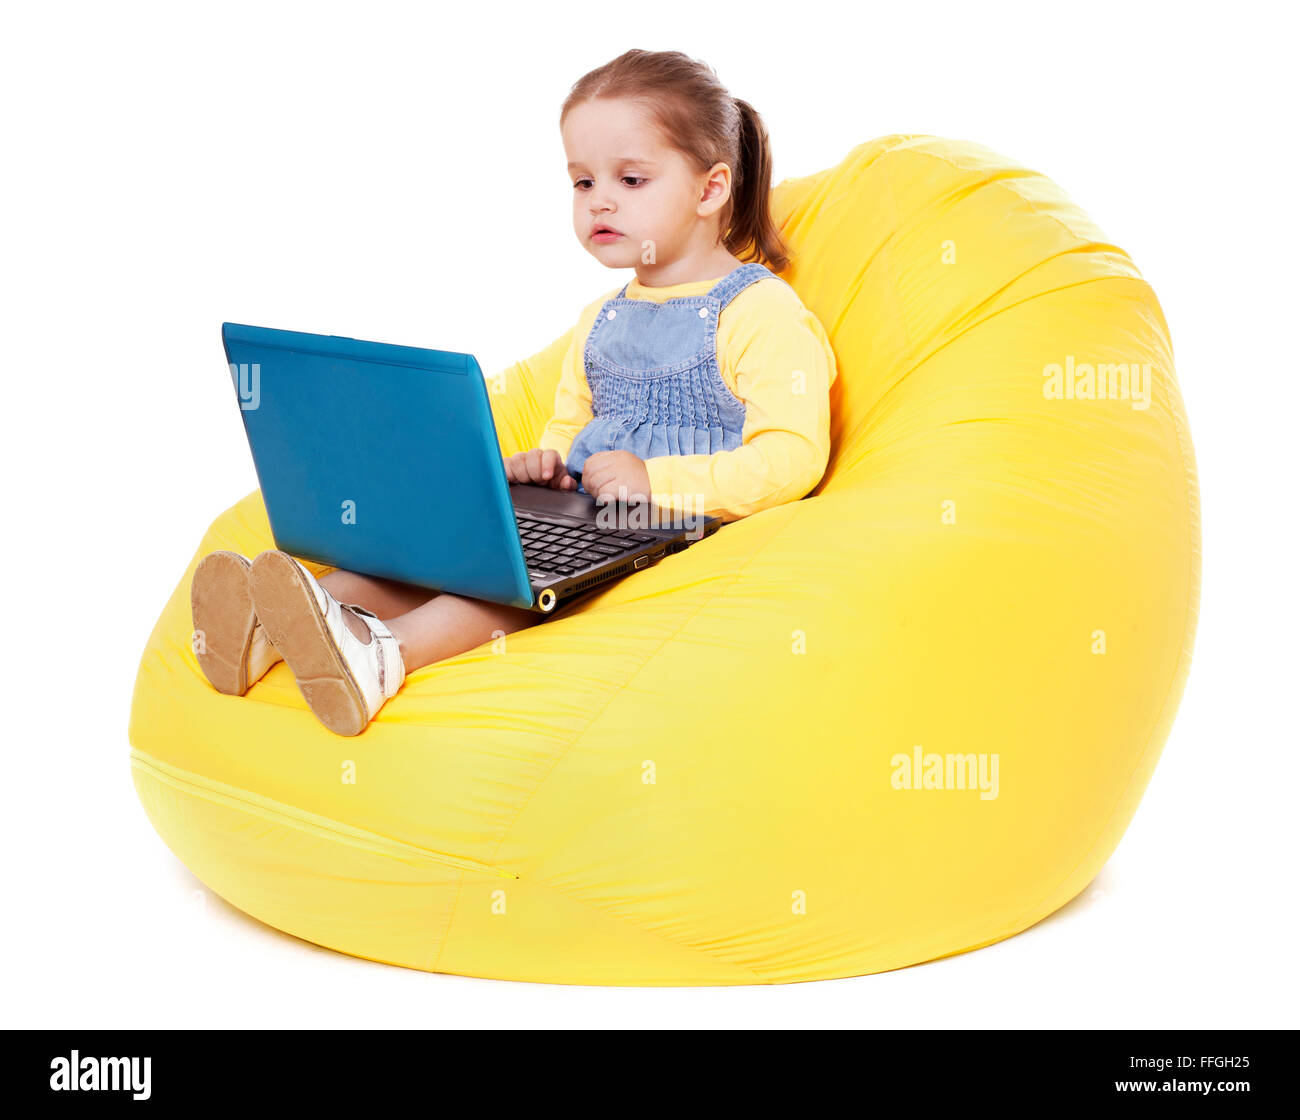 Niña sentada en un bean bag con portátil - Stock Image Foto de stock